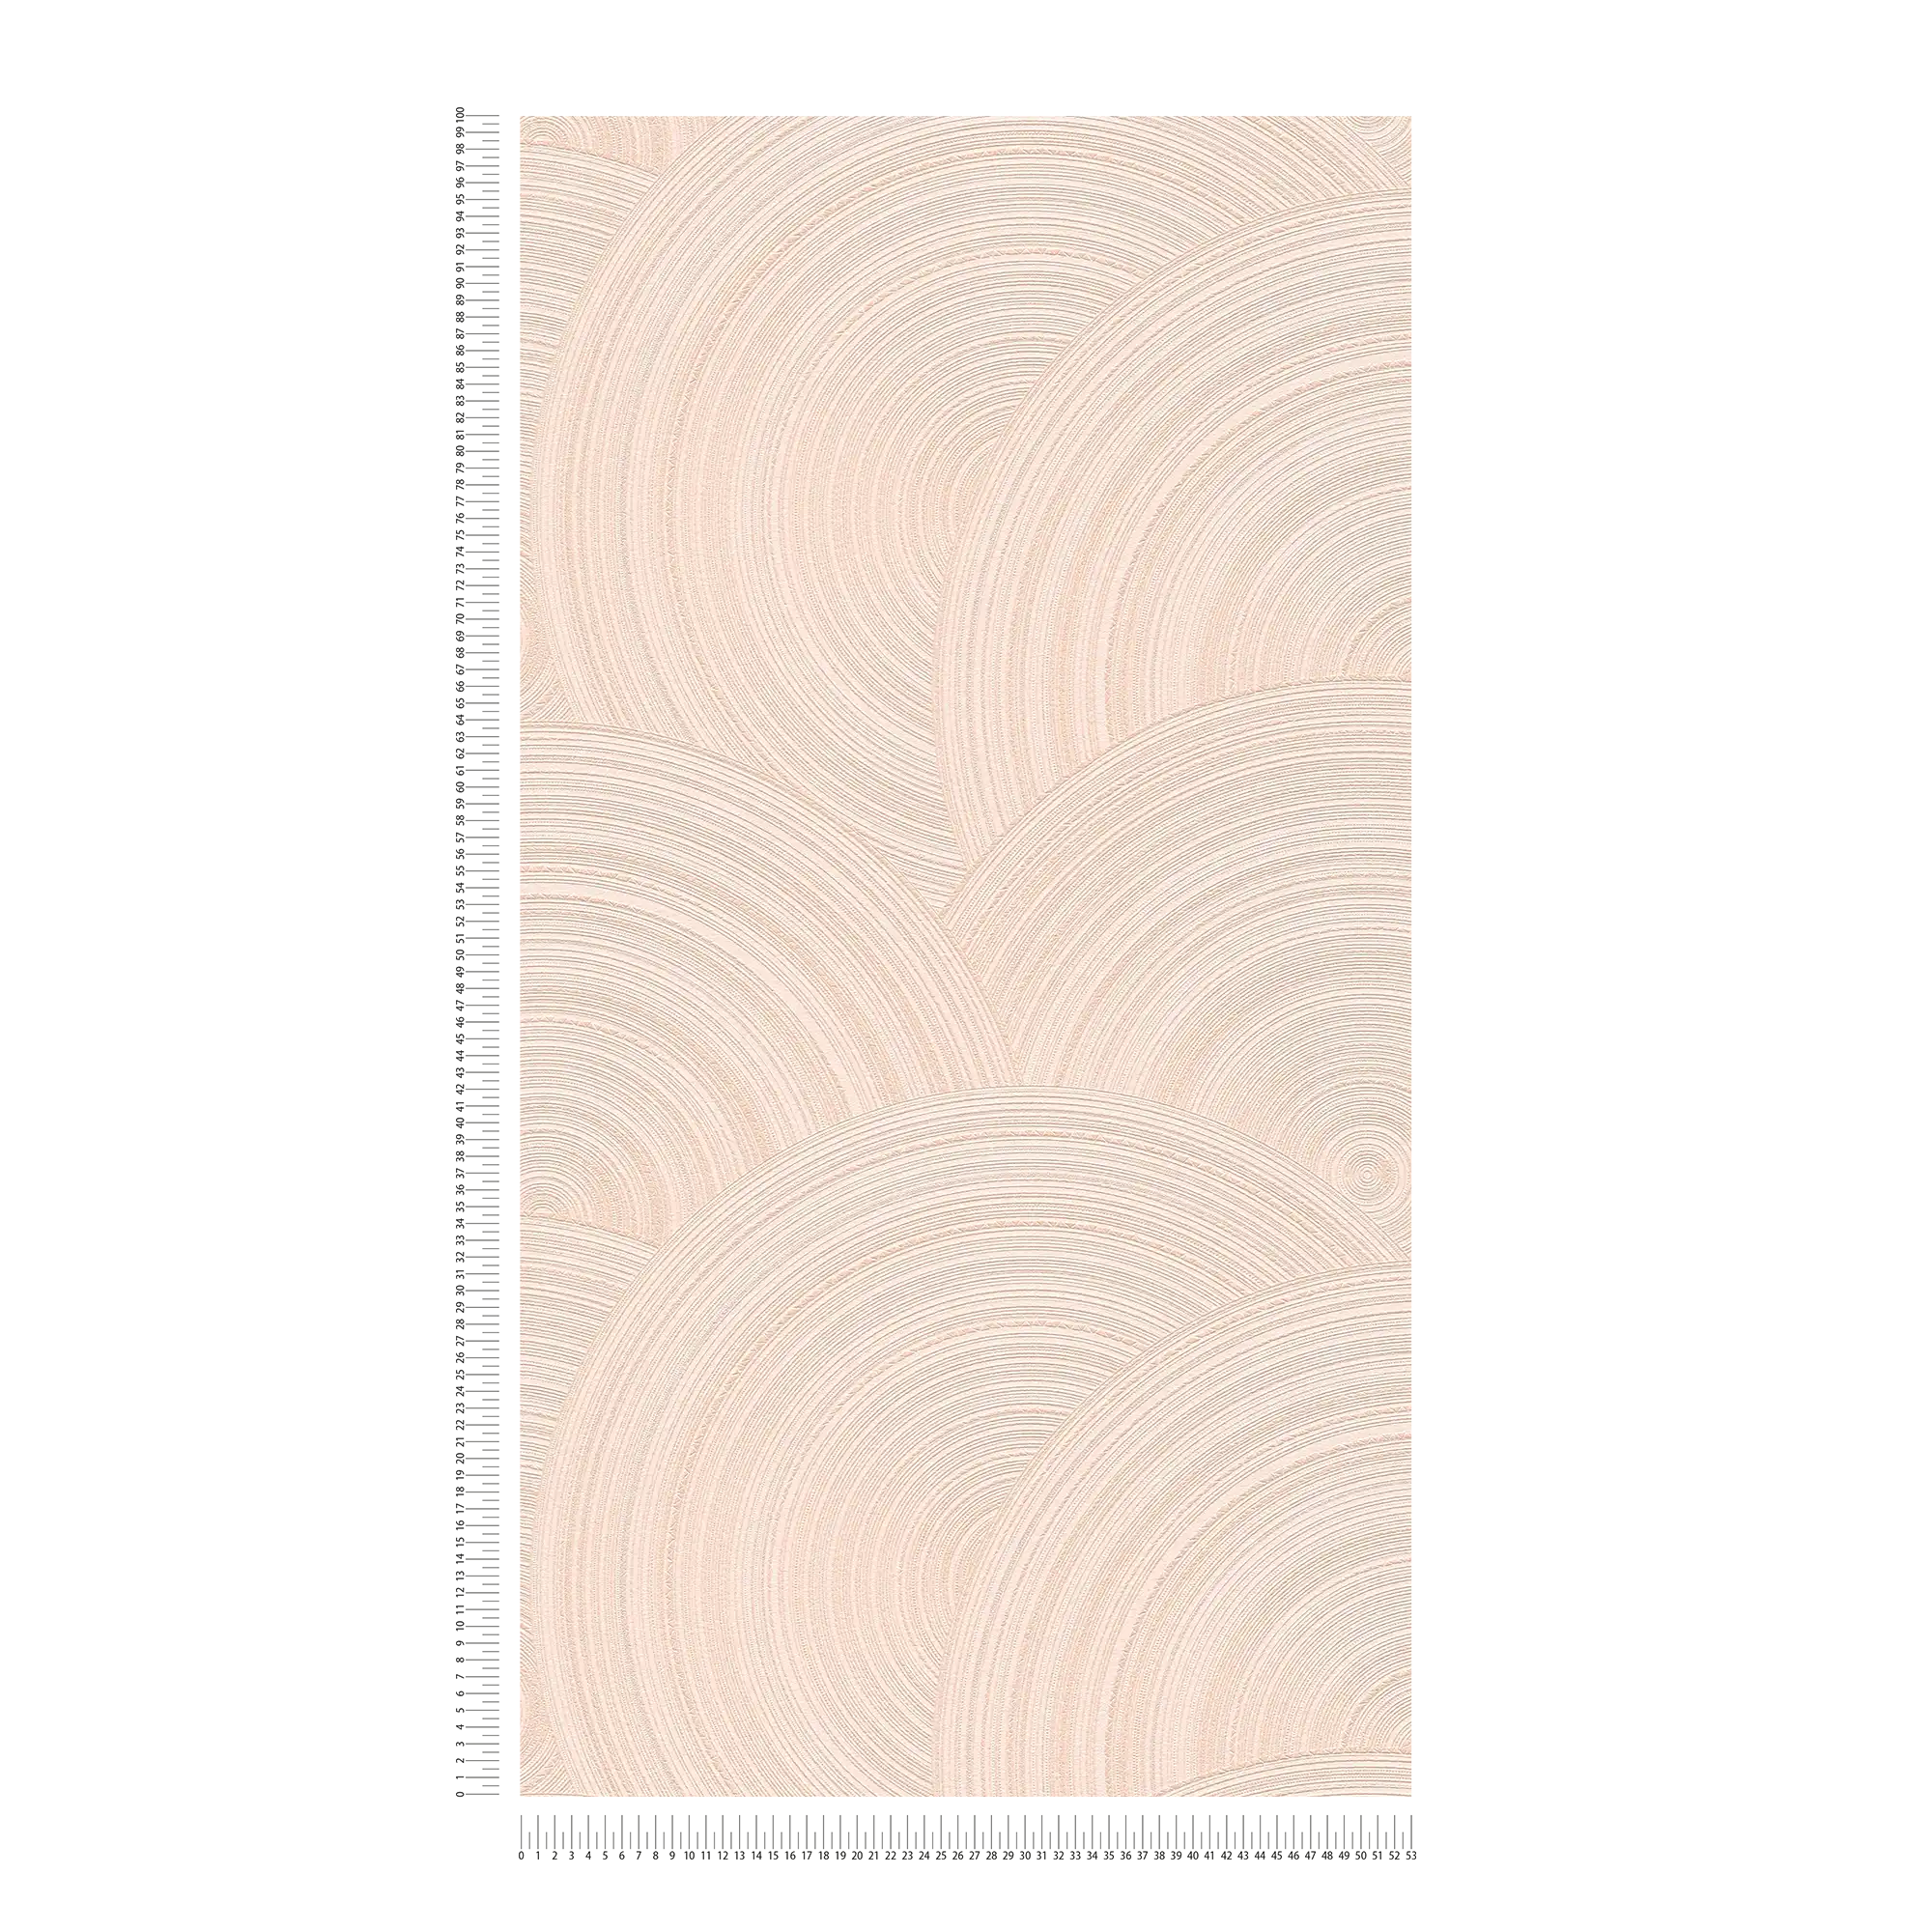             Carta da parati in tessuto non tessuto con motivo a cerchi e superficie strutturata - rosa
        